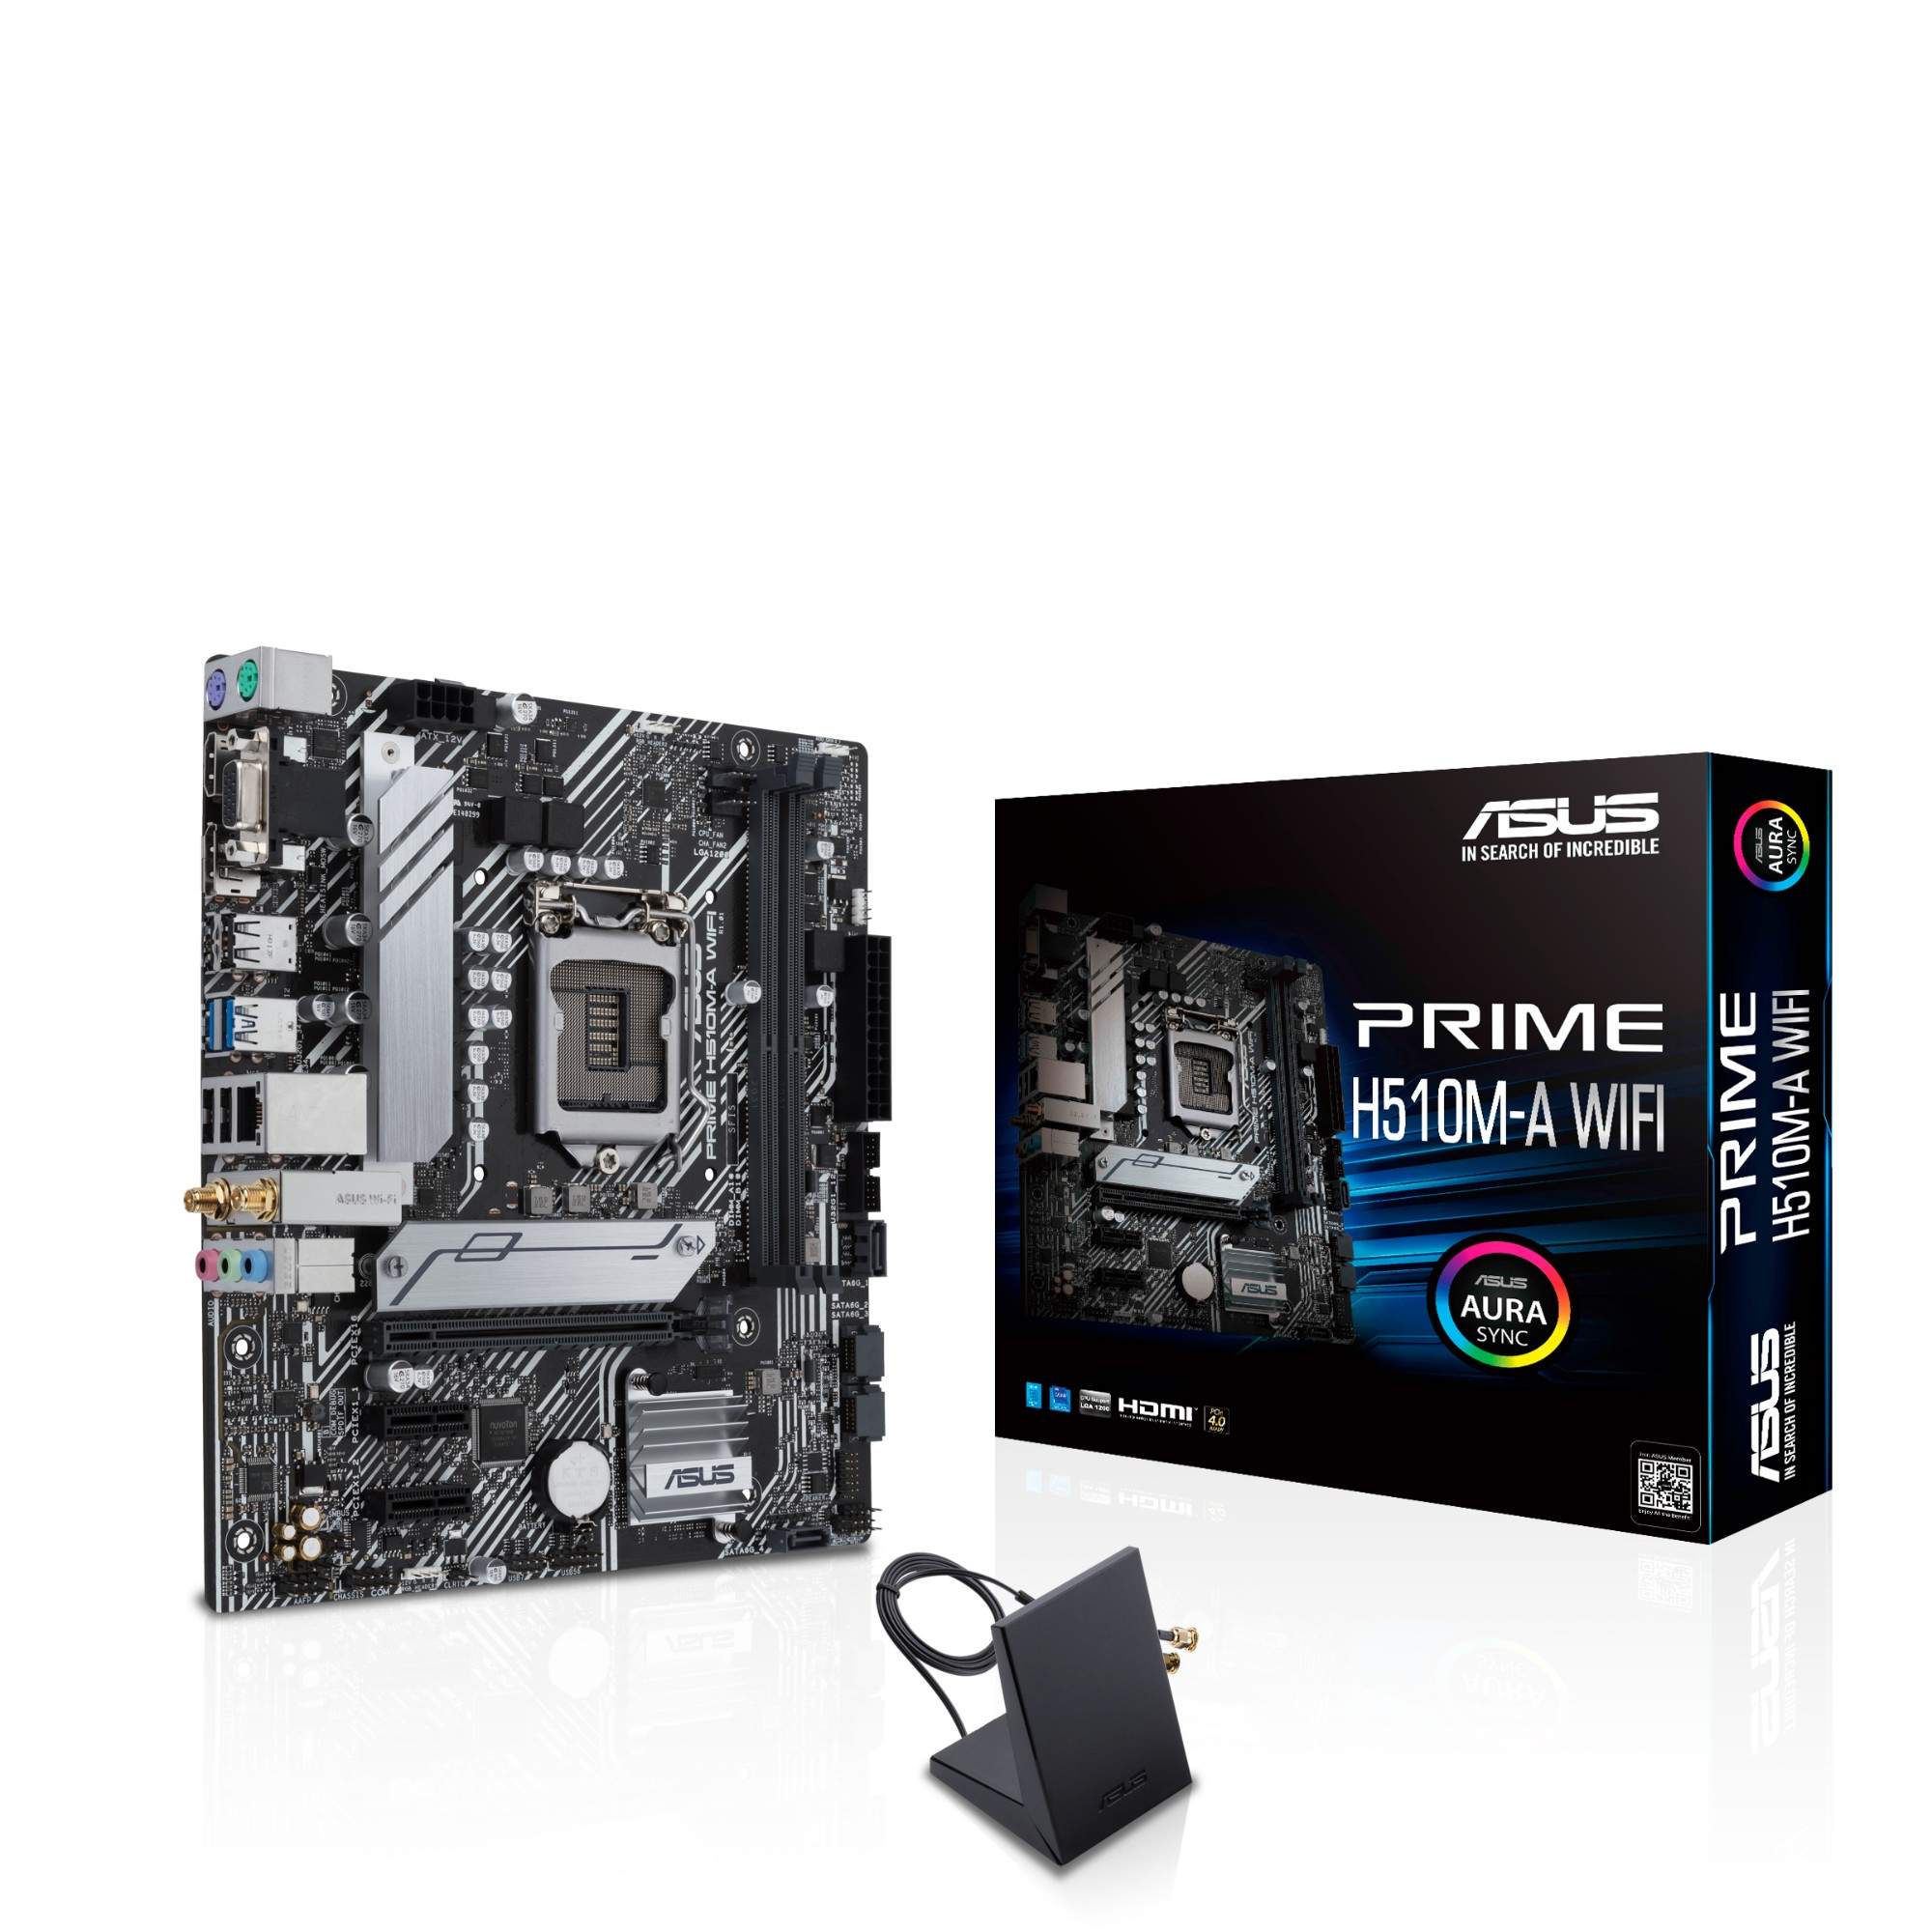 ASUS PRIME H510M GAMING PC